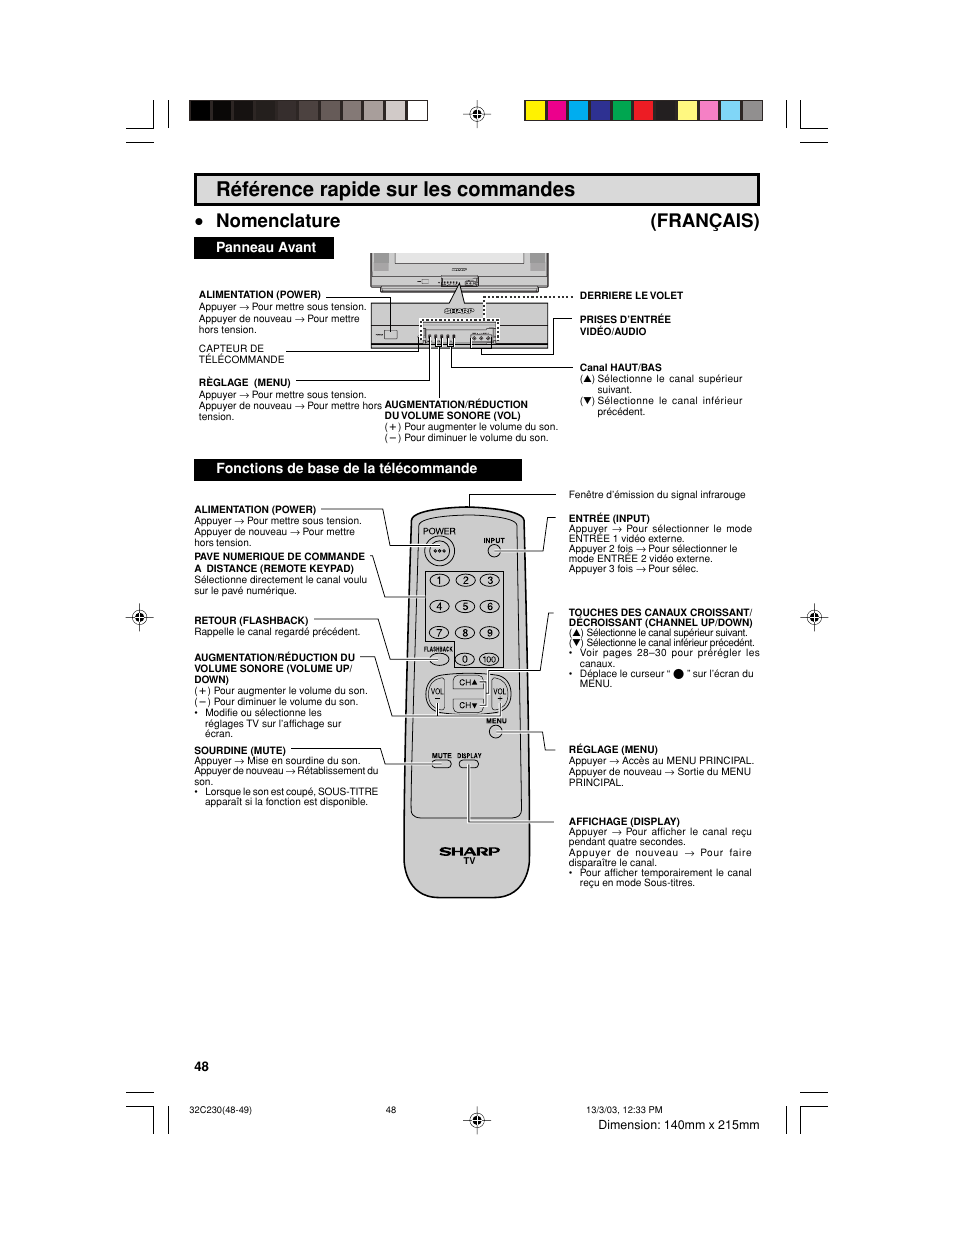 Référence rapide sur les commandes, Nomenclature (français) | Sharp 32C230 User Manual | Page 48 / 52